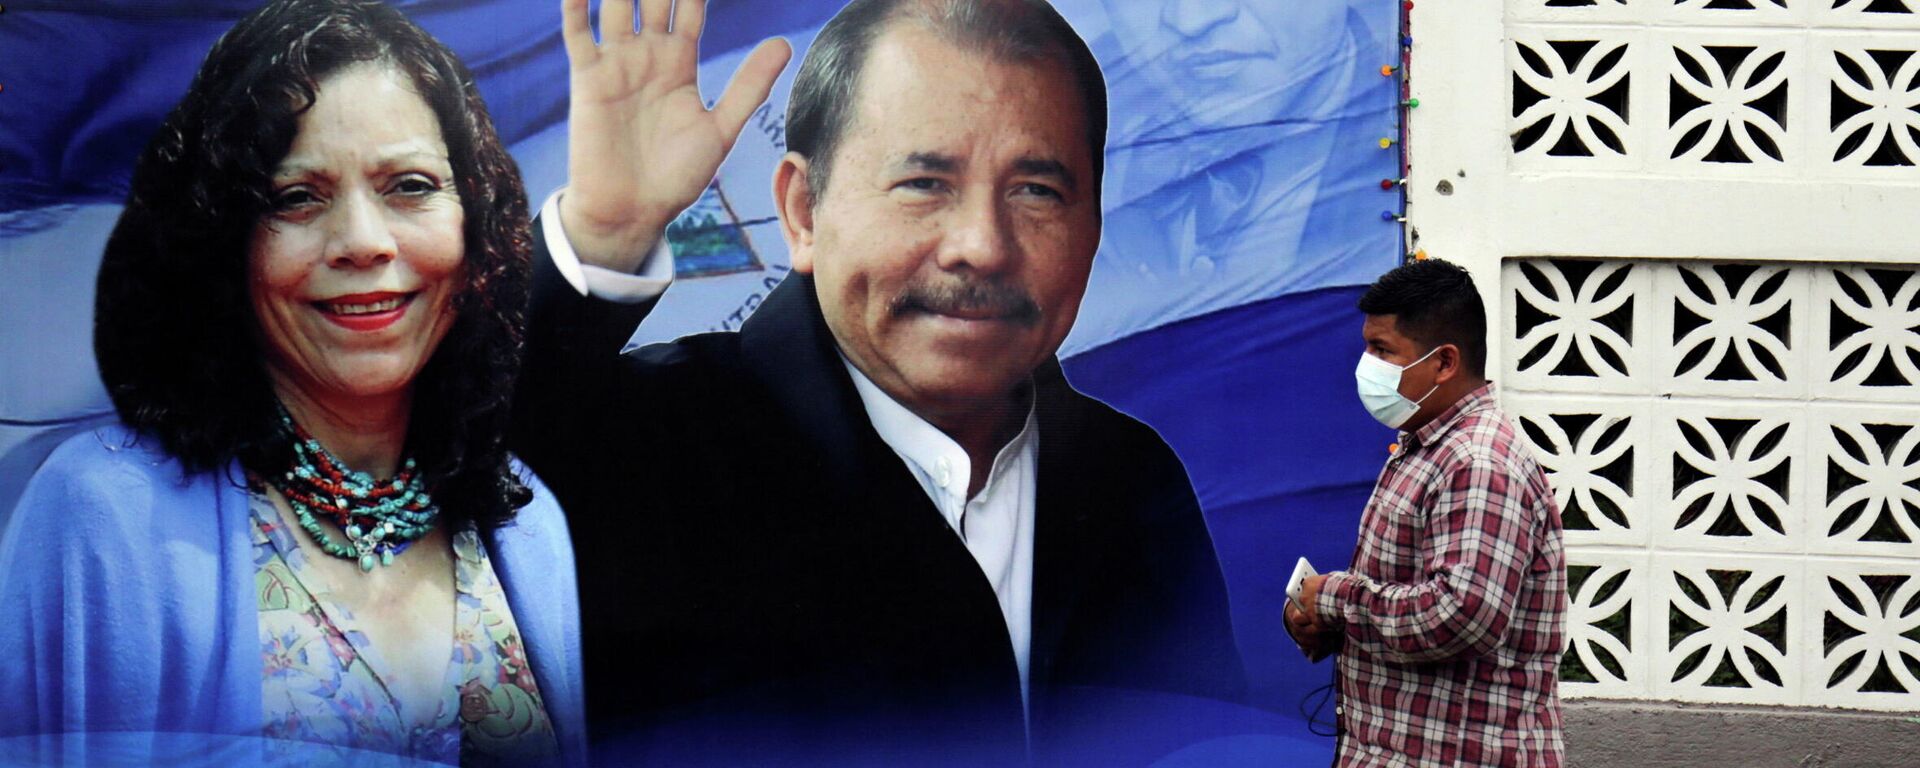 Homem passa por um cartaz que exibe o presidente da Nicarágua Daniel Ortega e a vice-presidente Rosario Murillo antes das eleições presidenciais no país - Sputnik Brasil, 1920, 20.11.2021